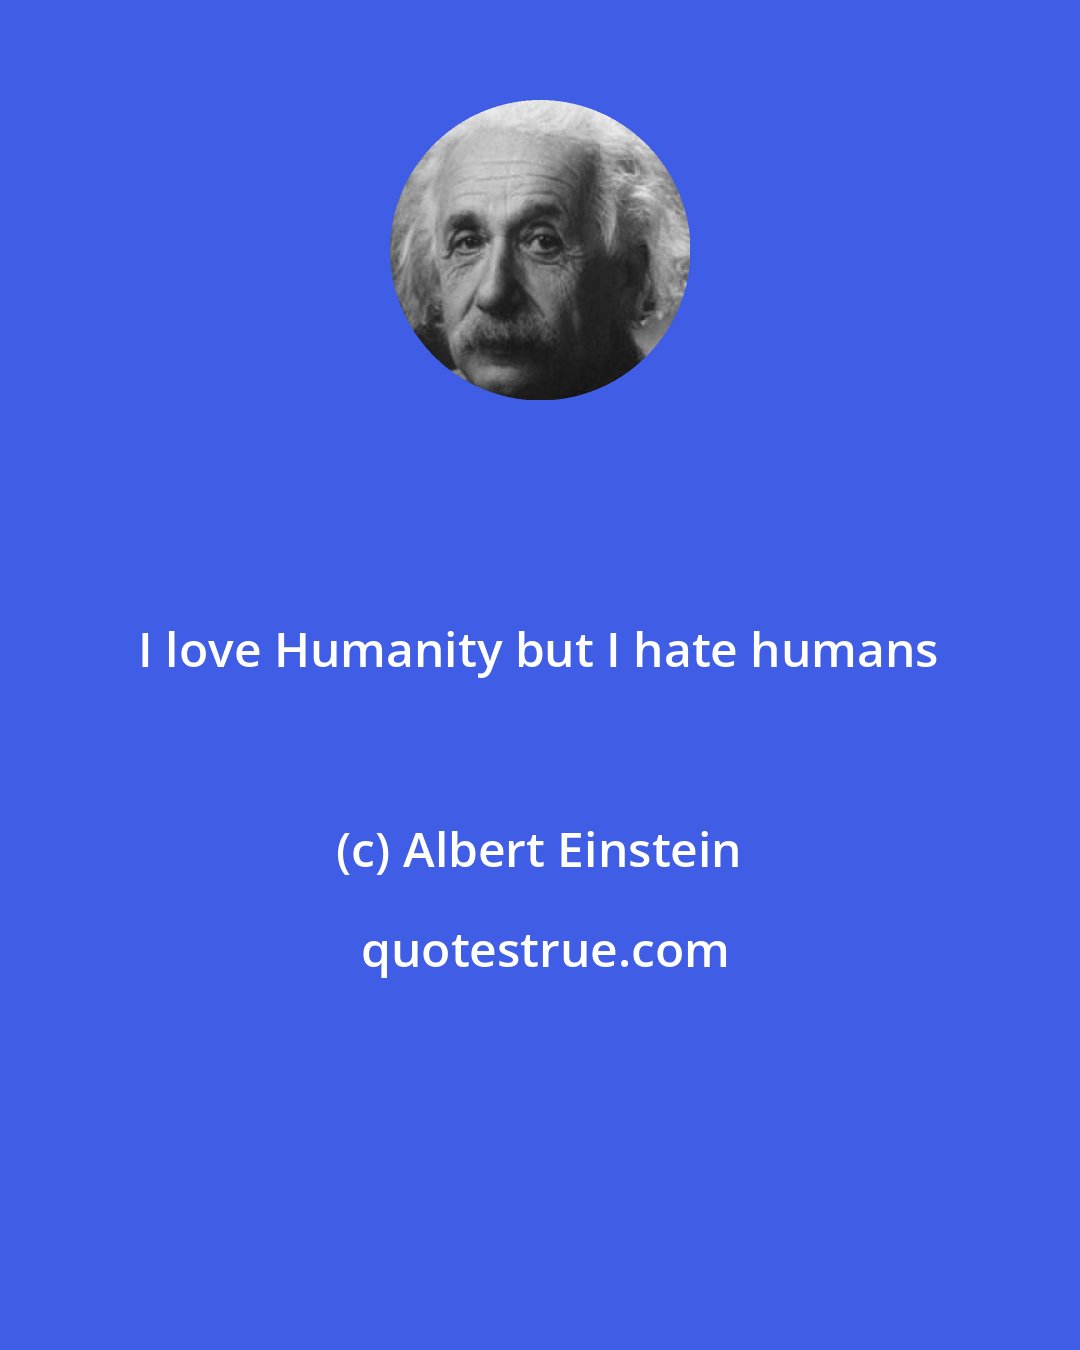 Albert Einstein: I love Humanity but I hate humans